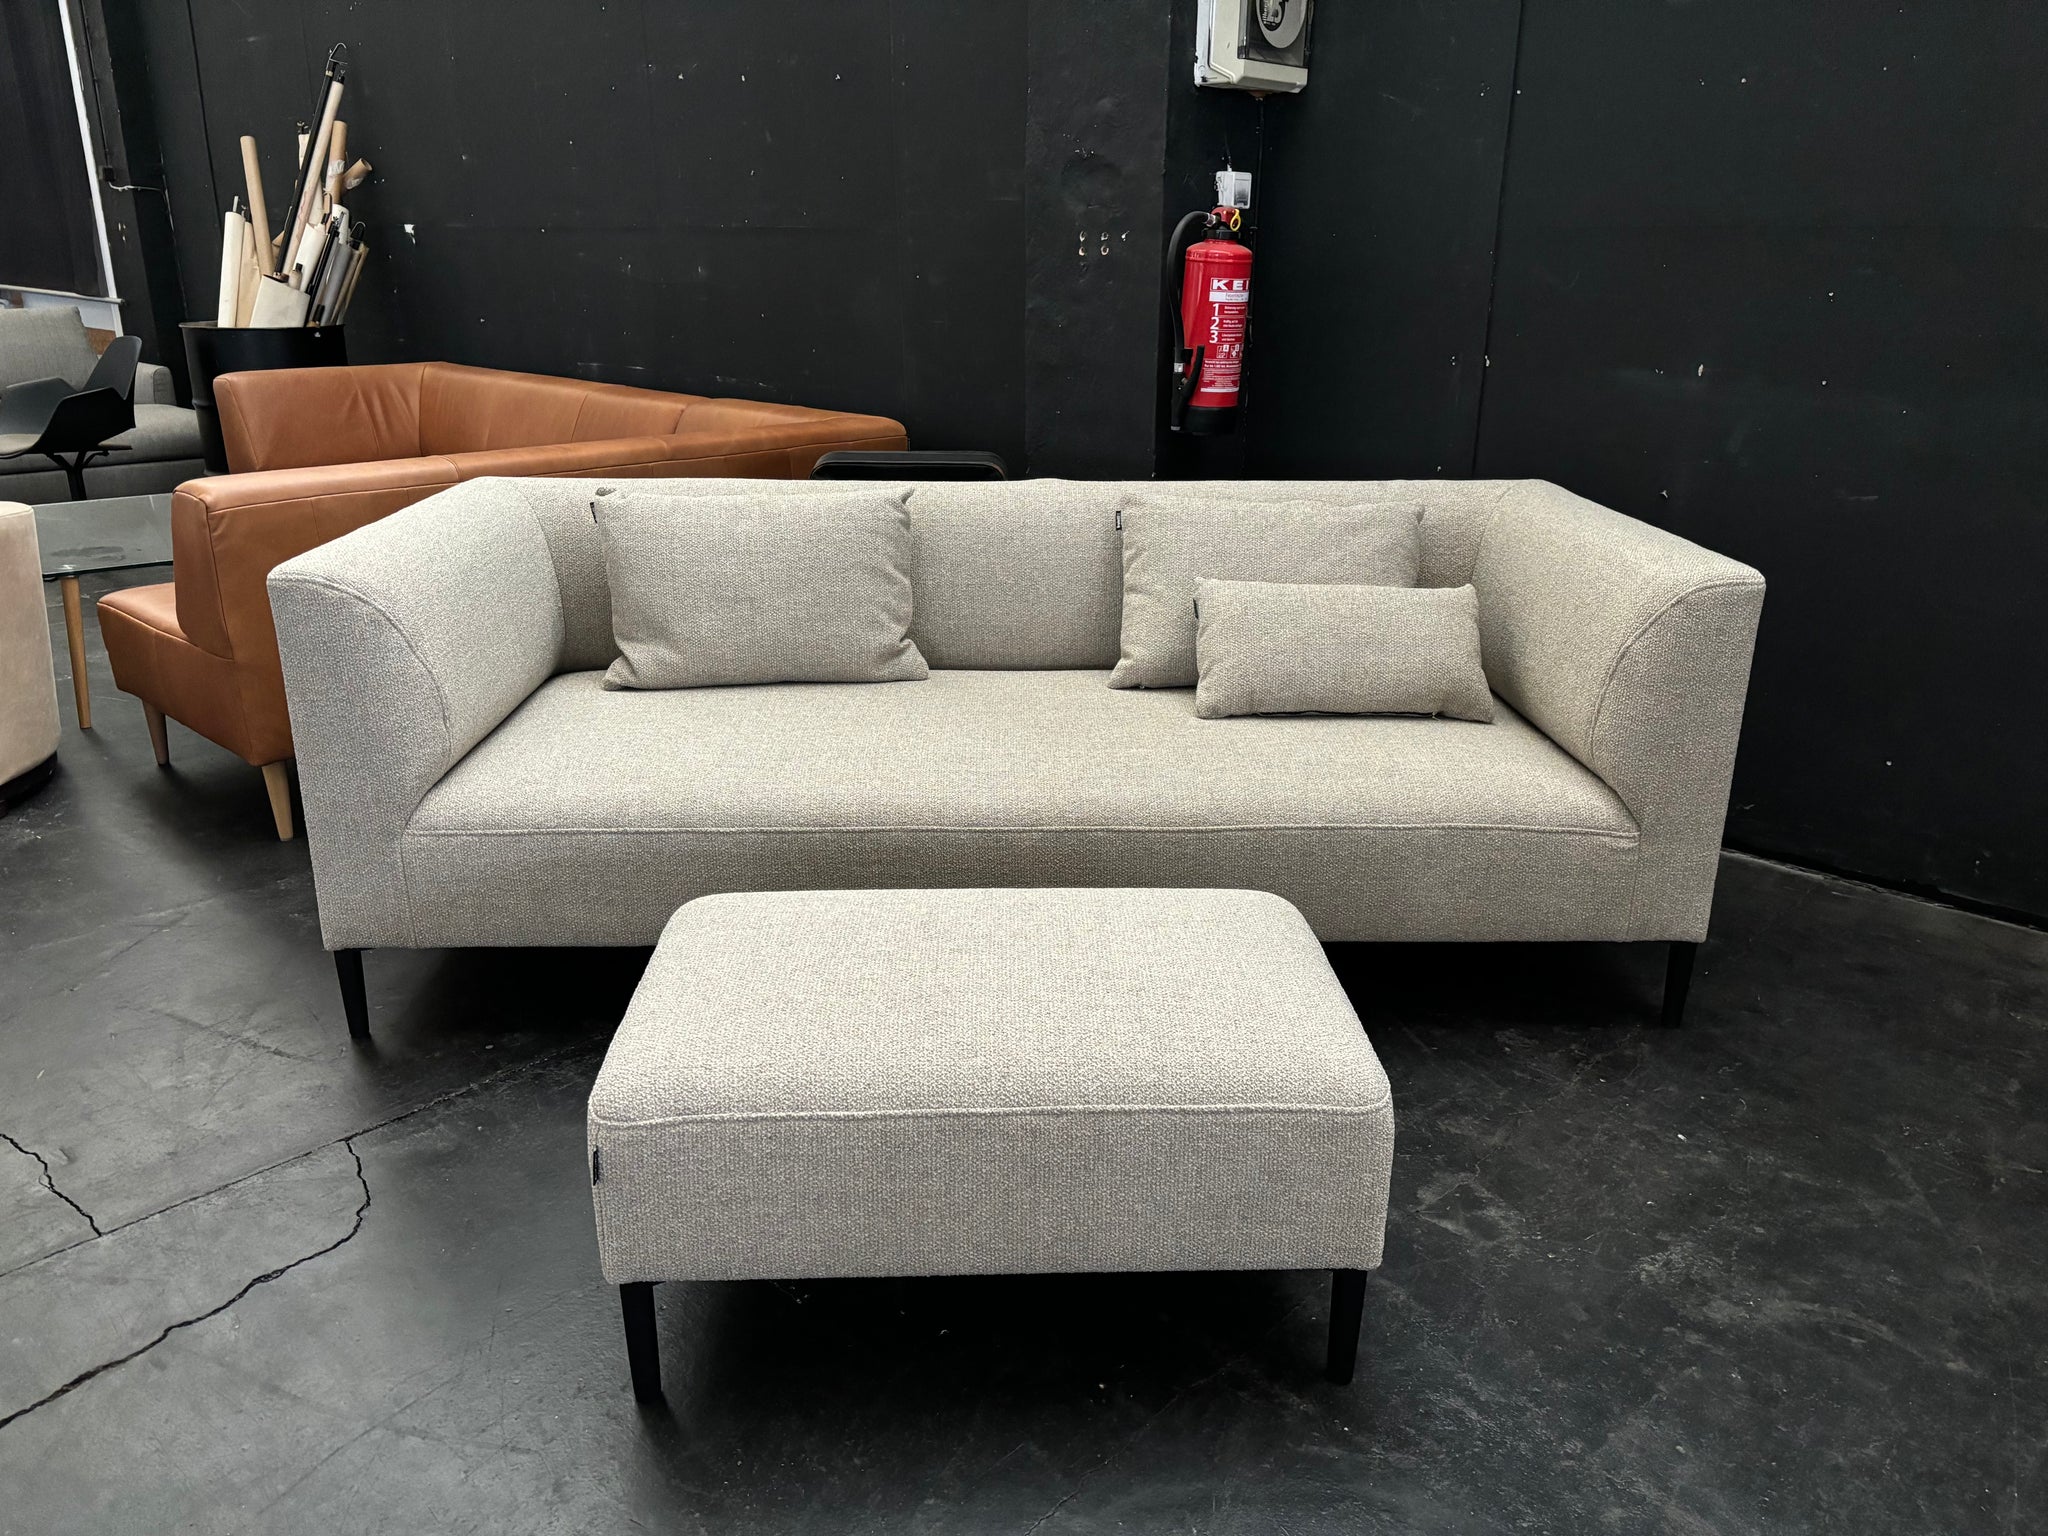 freistil - Sofa - freistil 160 - Stoff grau  - sofort verfügbar